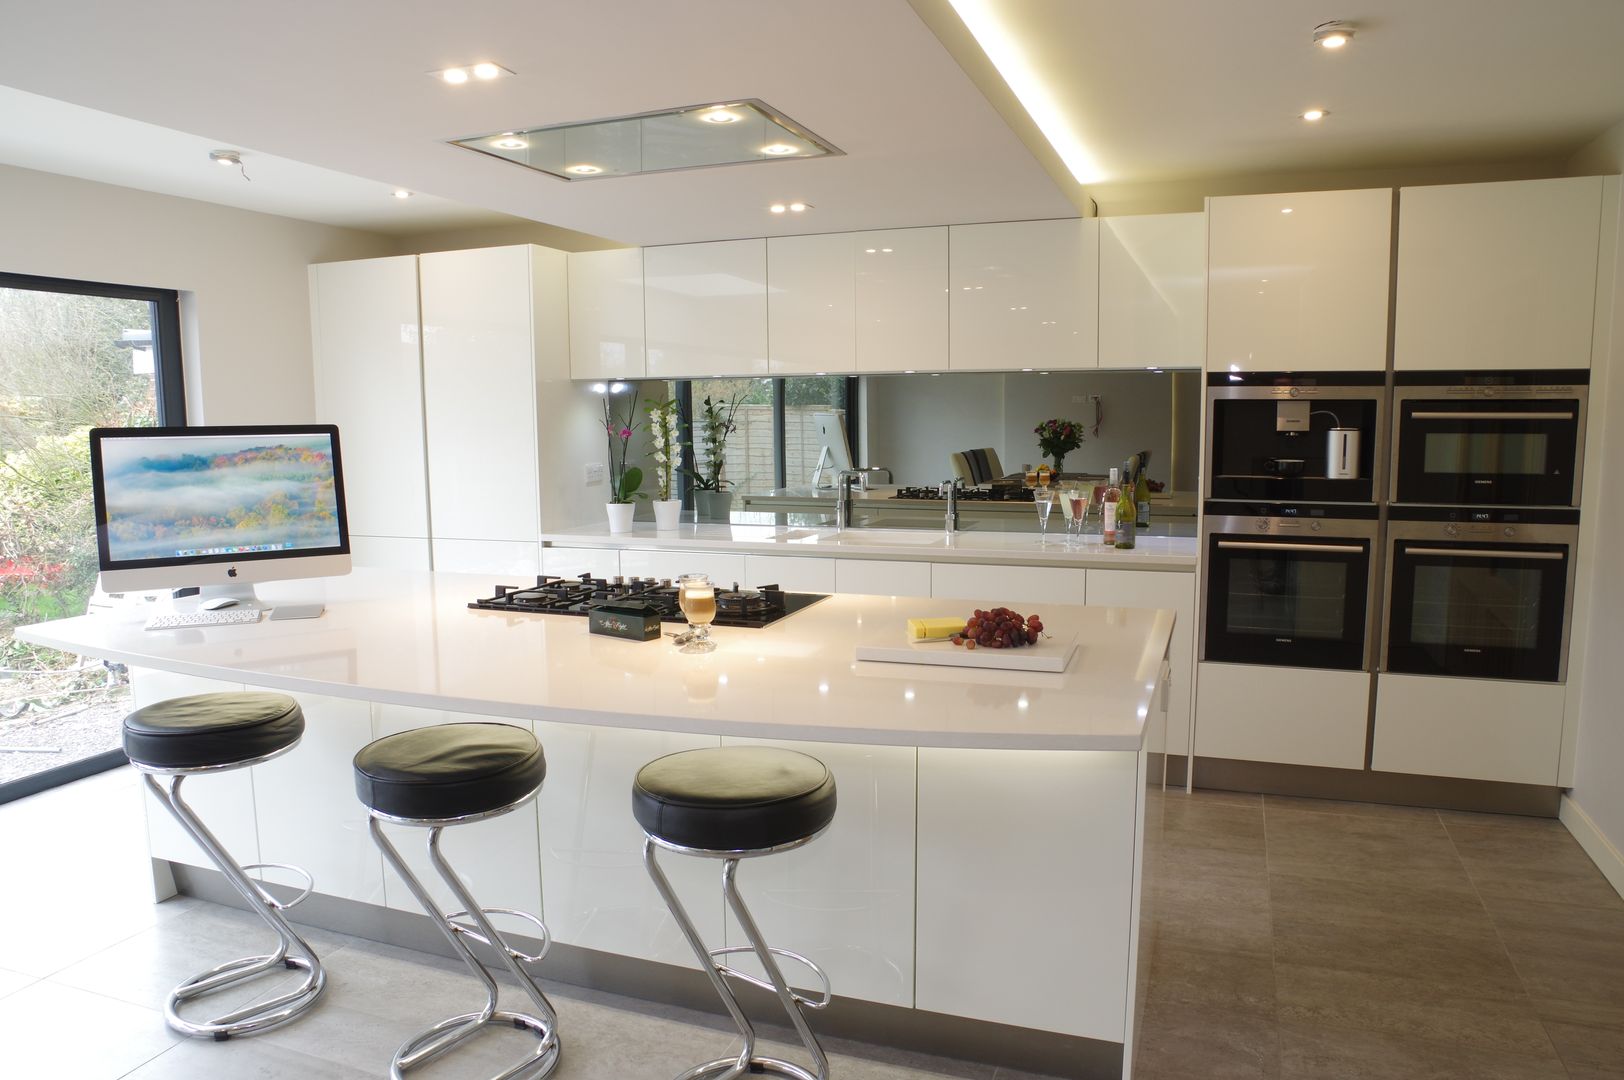 Luxurious White Kitchens by PTC , PTC Kitchens PTC Kitchens Cocinas de estilo moderno